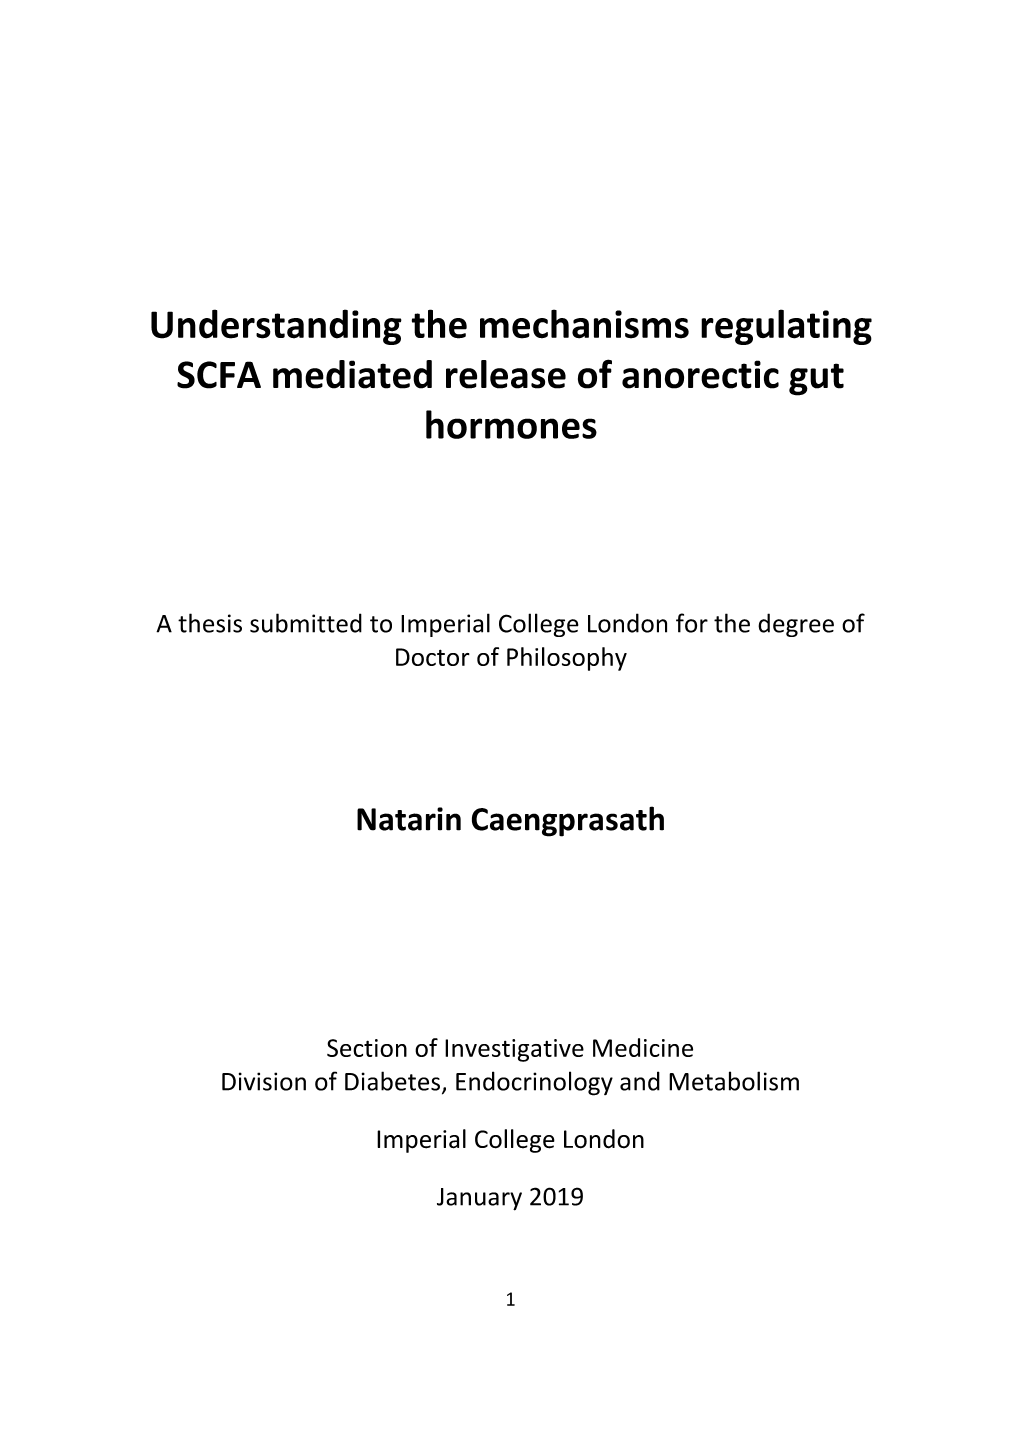 Understanding the Mechanisms Regulating SCFA Mediated Release of Anorectic Gut Hormones